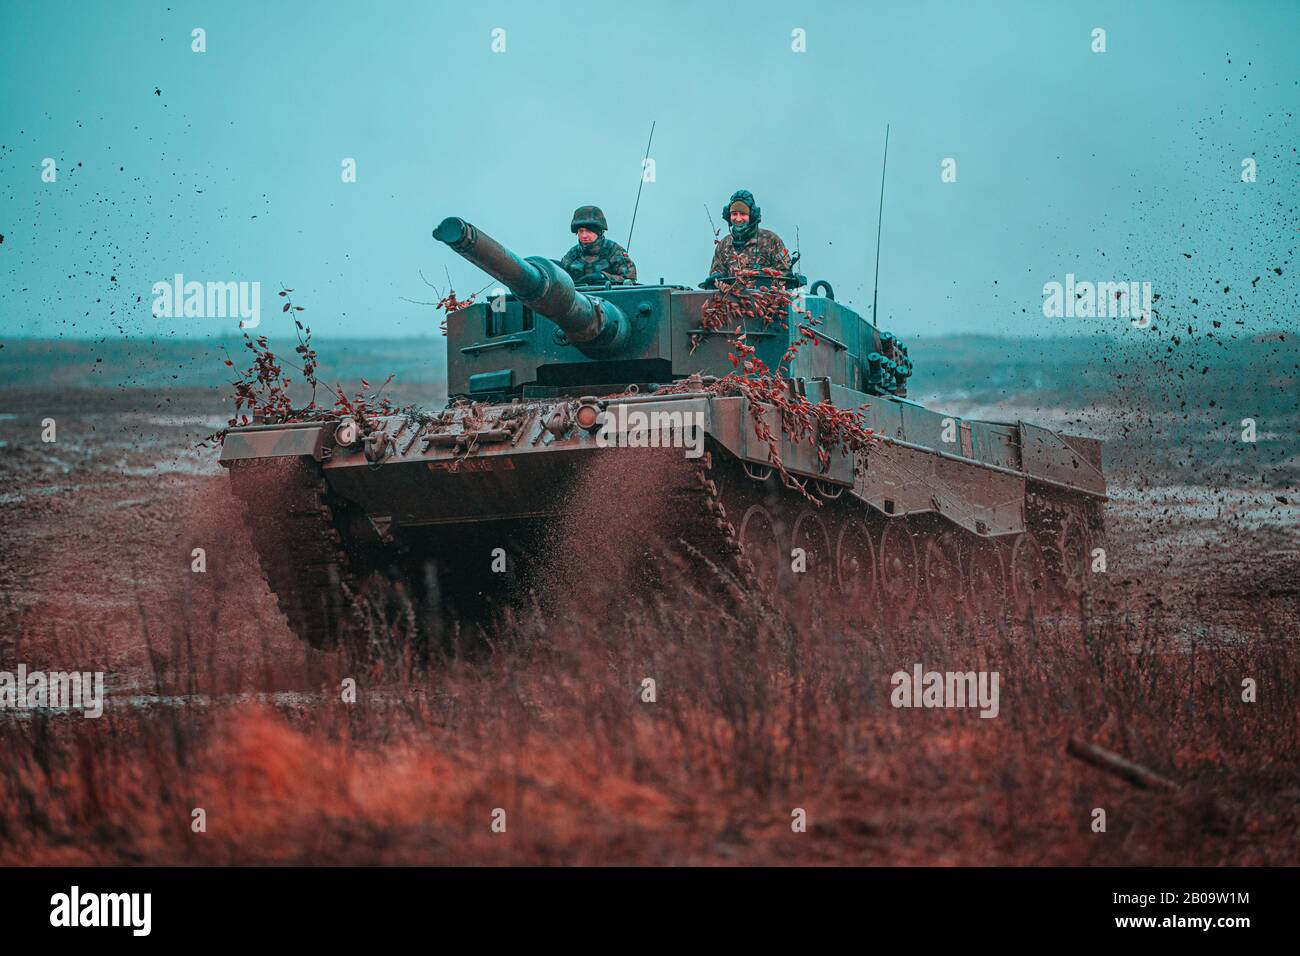 Les Soldats polonais, affectés à la 1ère Brigade blindée de Varsovie, exploitent un char Leopard 2 dans le cadre d'un scénario d'entraînement multinational à l'appui du Groupe de bataille de l'OTAN sur la présence avancée Pologne le 6 février 2020 à Bemowo Piskie, Pologne. La Présence avancée de l'OTAN se compose de quatre groupes de combat de taille bataillon déployés sur une base de rotation persistante vers l'Estonie, la Lettonie, la Lituanie et la Pologne. Banque D'Images